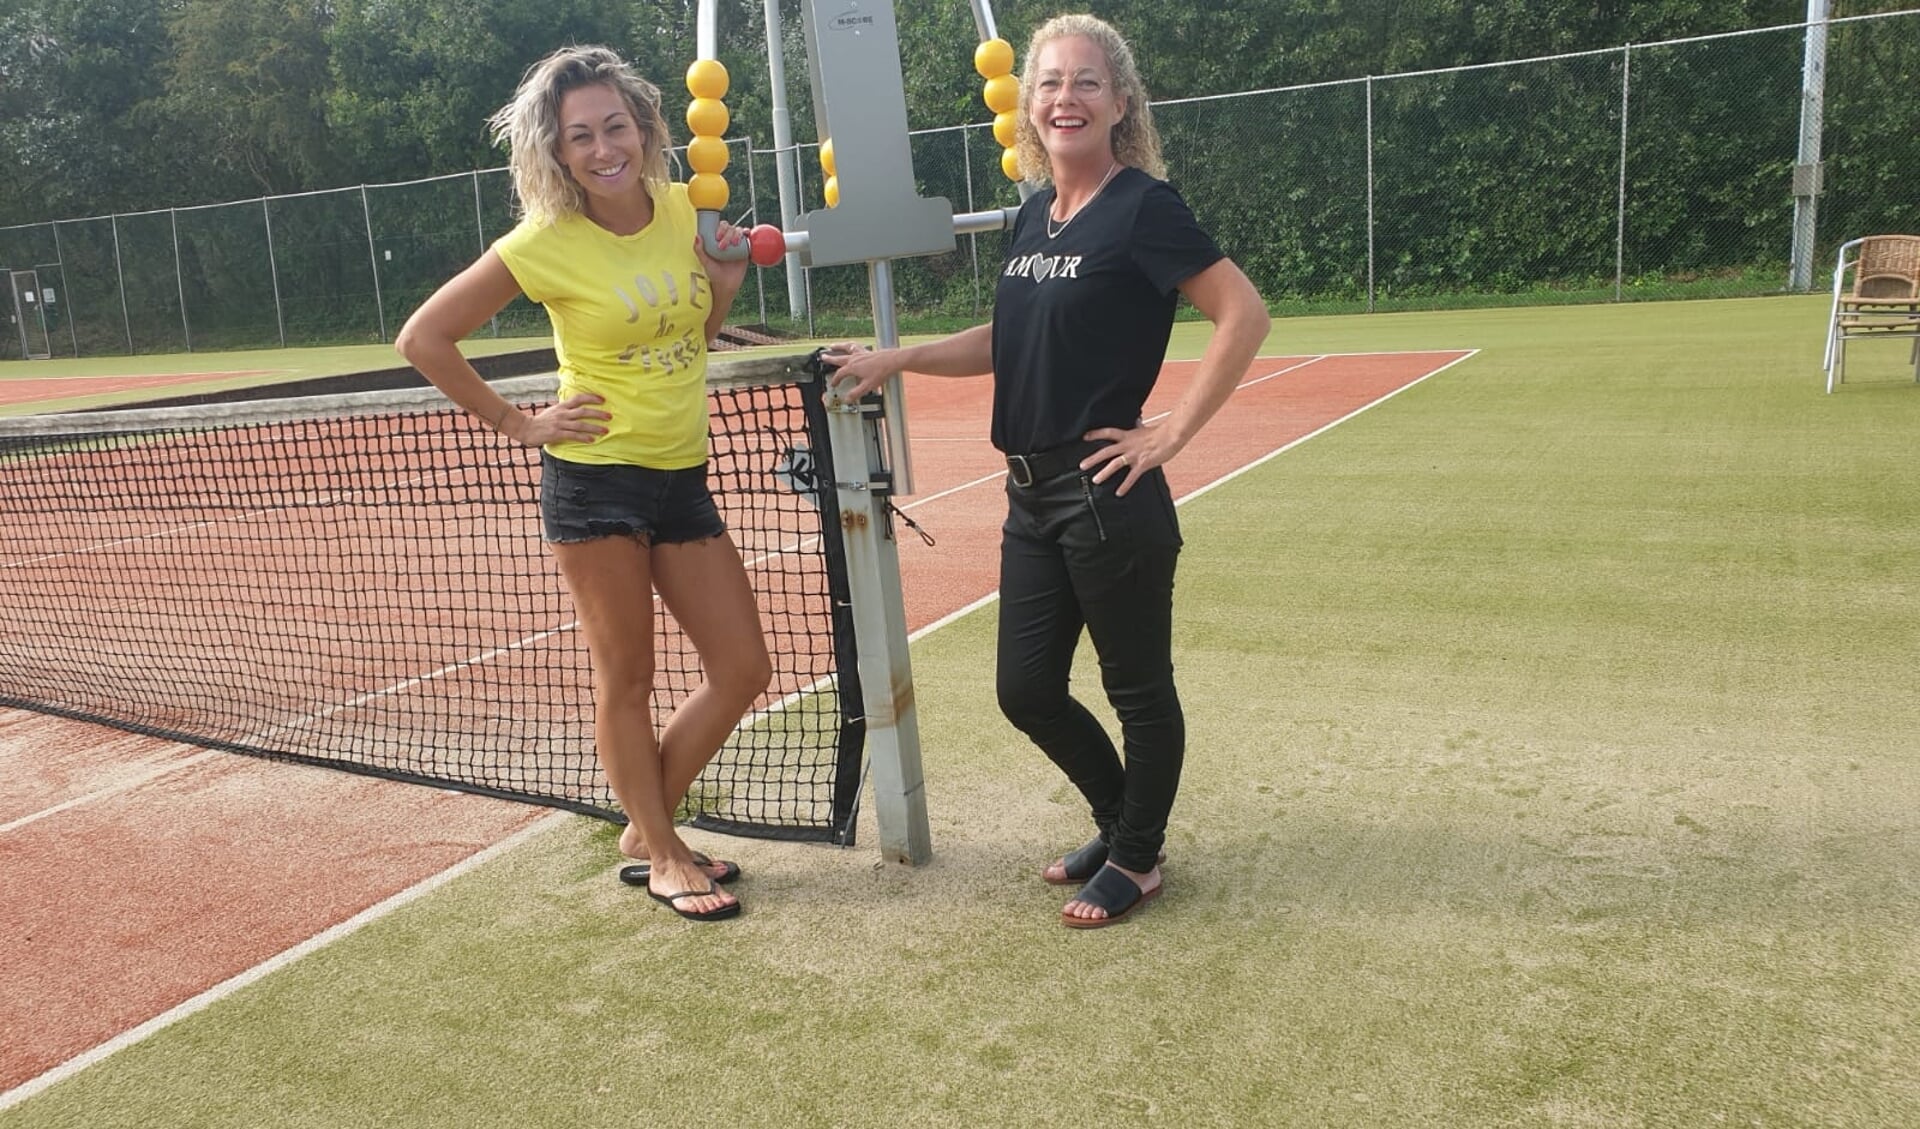 Lesley en Mariska Gul zijn sinds juli de nieuwe beheerders van het sportpark.